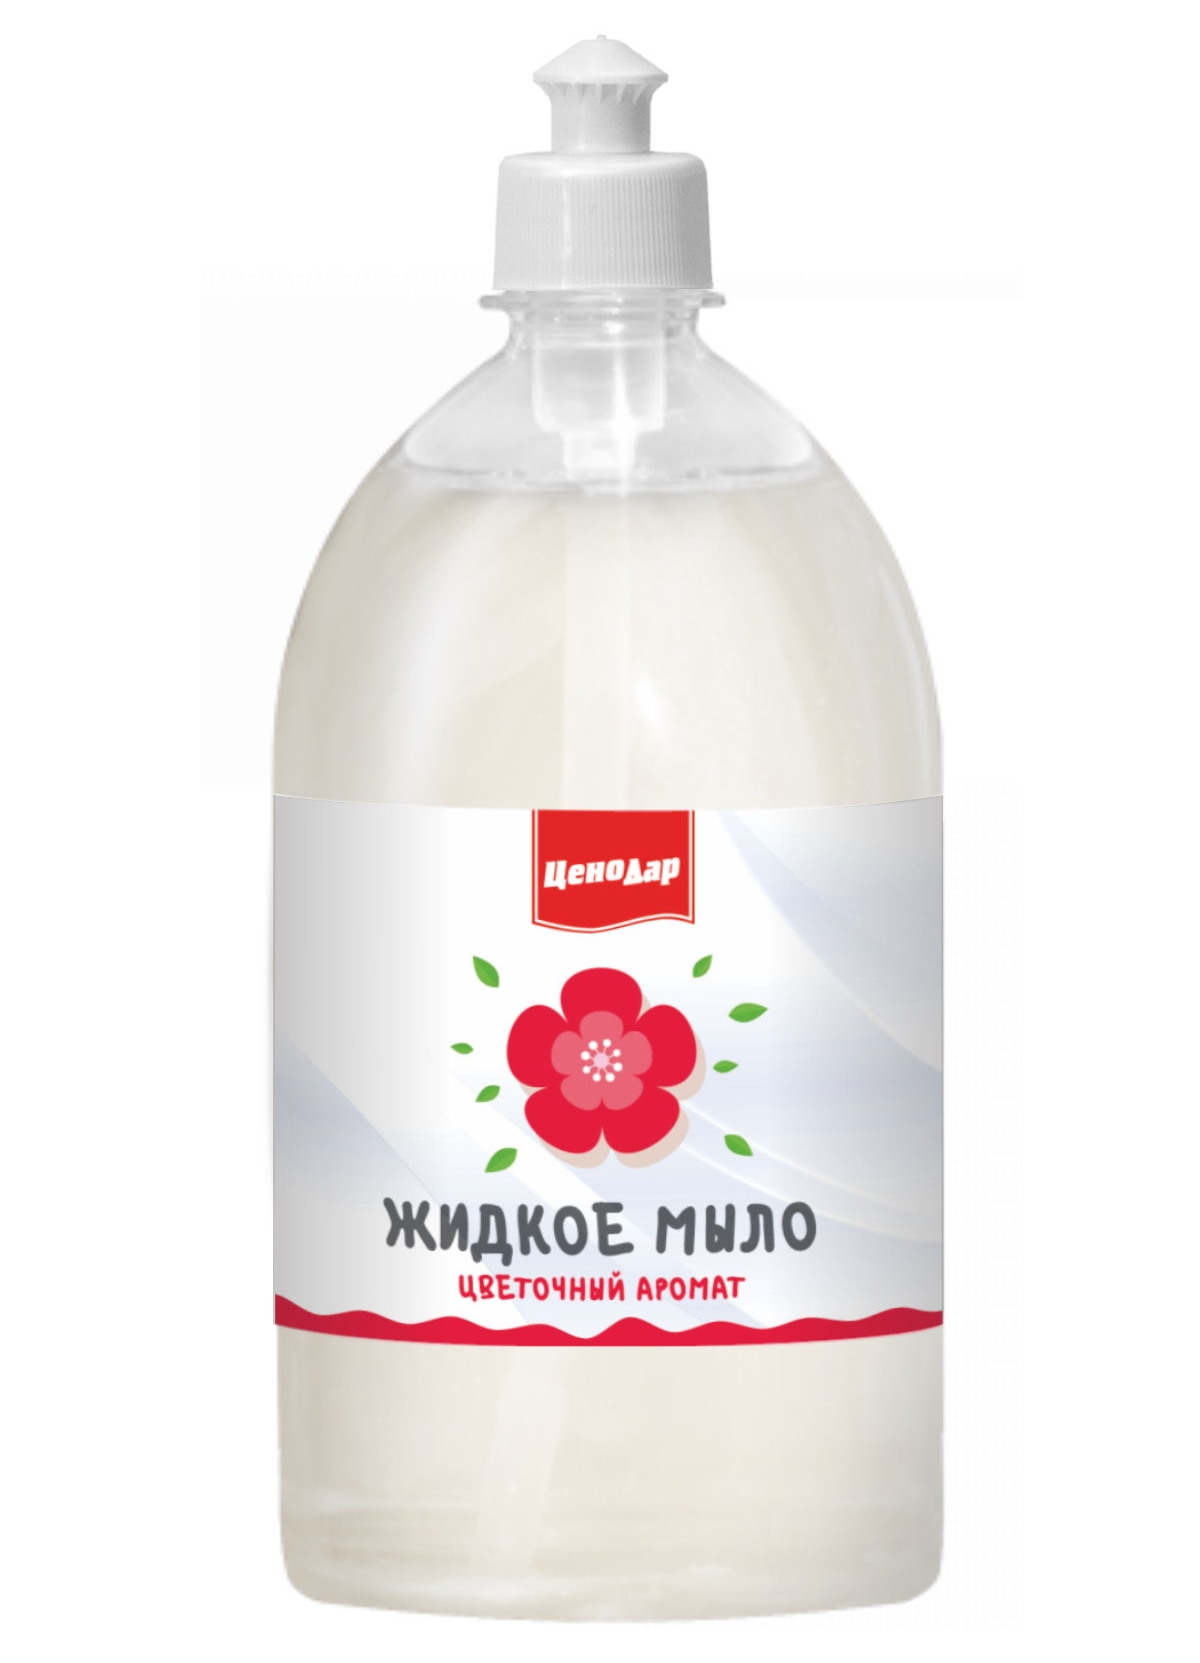 Жидкое мыло ЦеноДар Цветочный аромат 1 л натуральное пенящееся жидкое мыло miyoshi эко c ароматом ов 600 мл